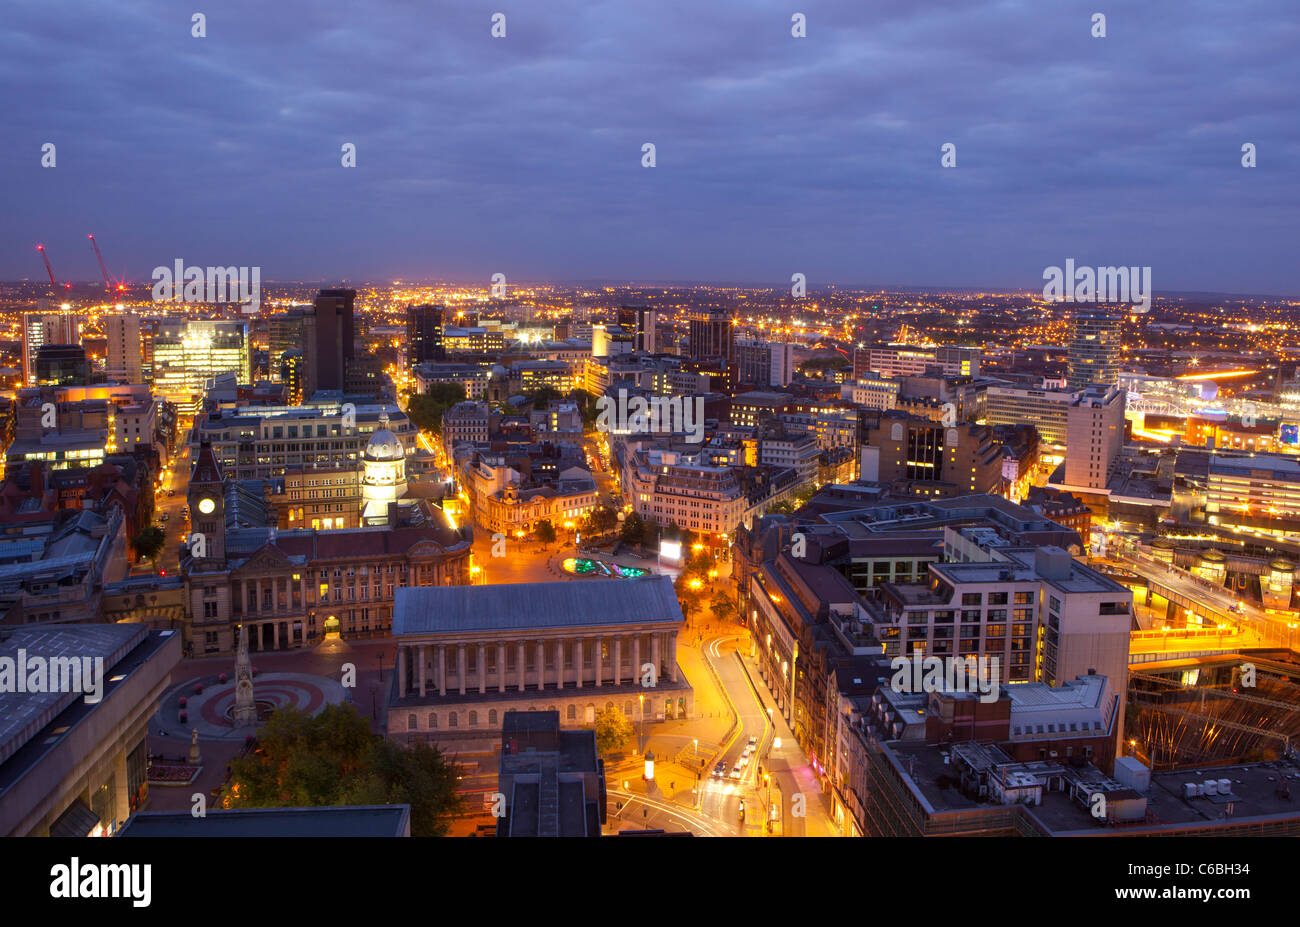 Paisaje urbano del centro de la ciudad de Birmingham en la noche, Inglaterra, Reino Unido. Foto de stock